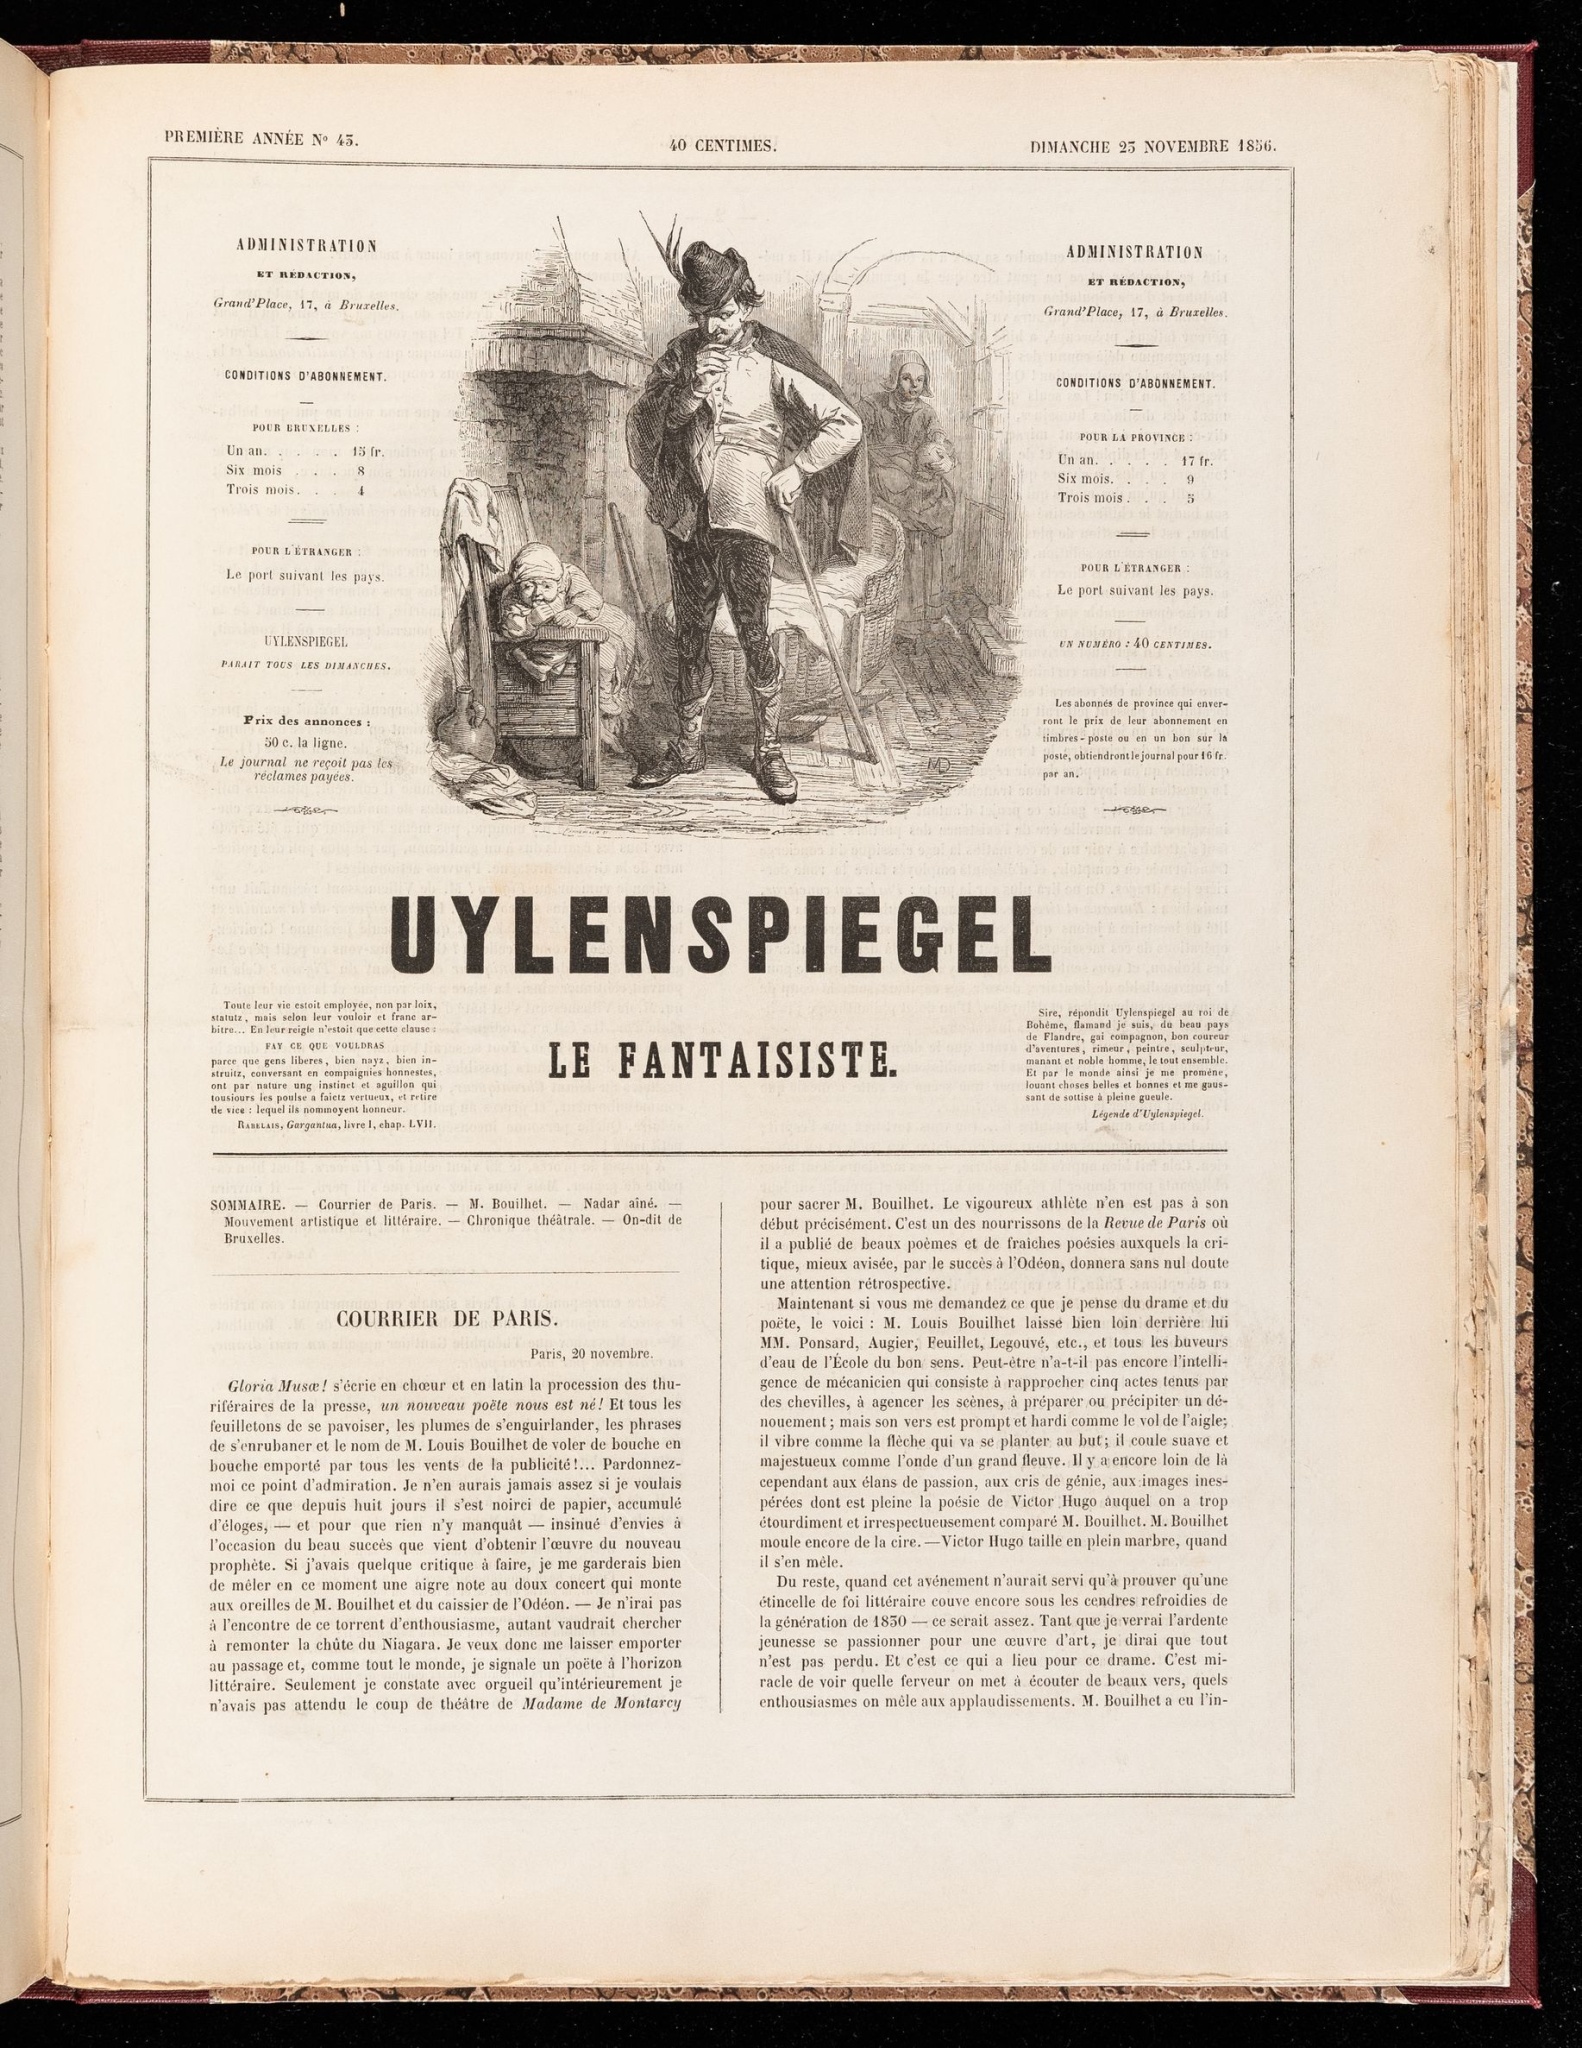 Uylenspiegel, journal des ébats artistiques et littéraires. Première année - N° 43